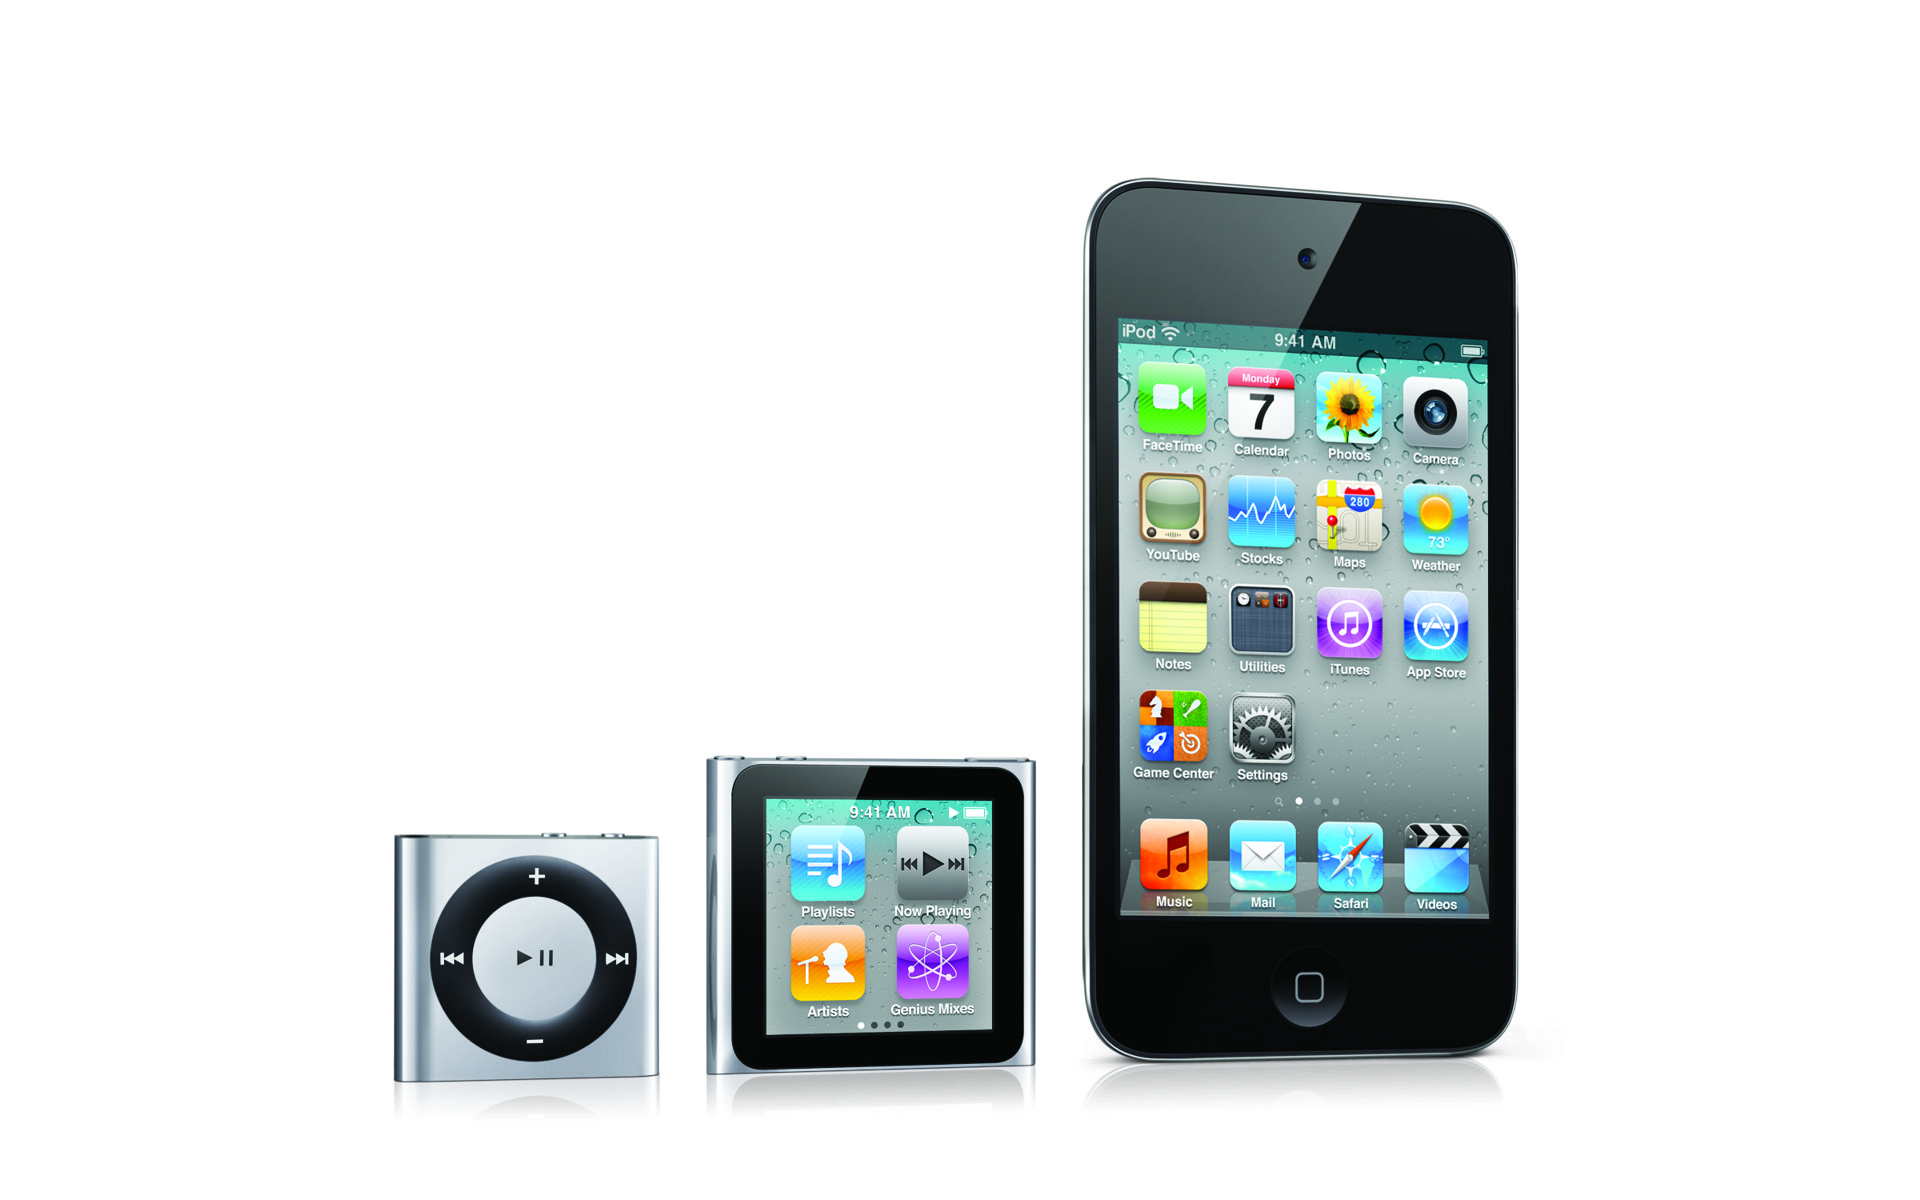 Immagine pubblicata in relazione al seguente contenuto: Apple rinnova gli iPod touch e iPod nano, ora con iOS 5 e iCloud | Nome immagine: news15807_1.jpg